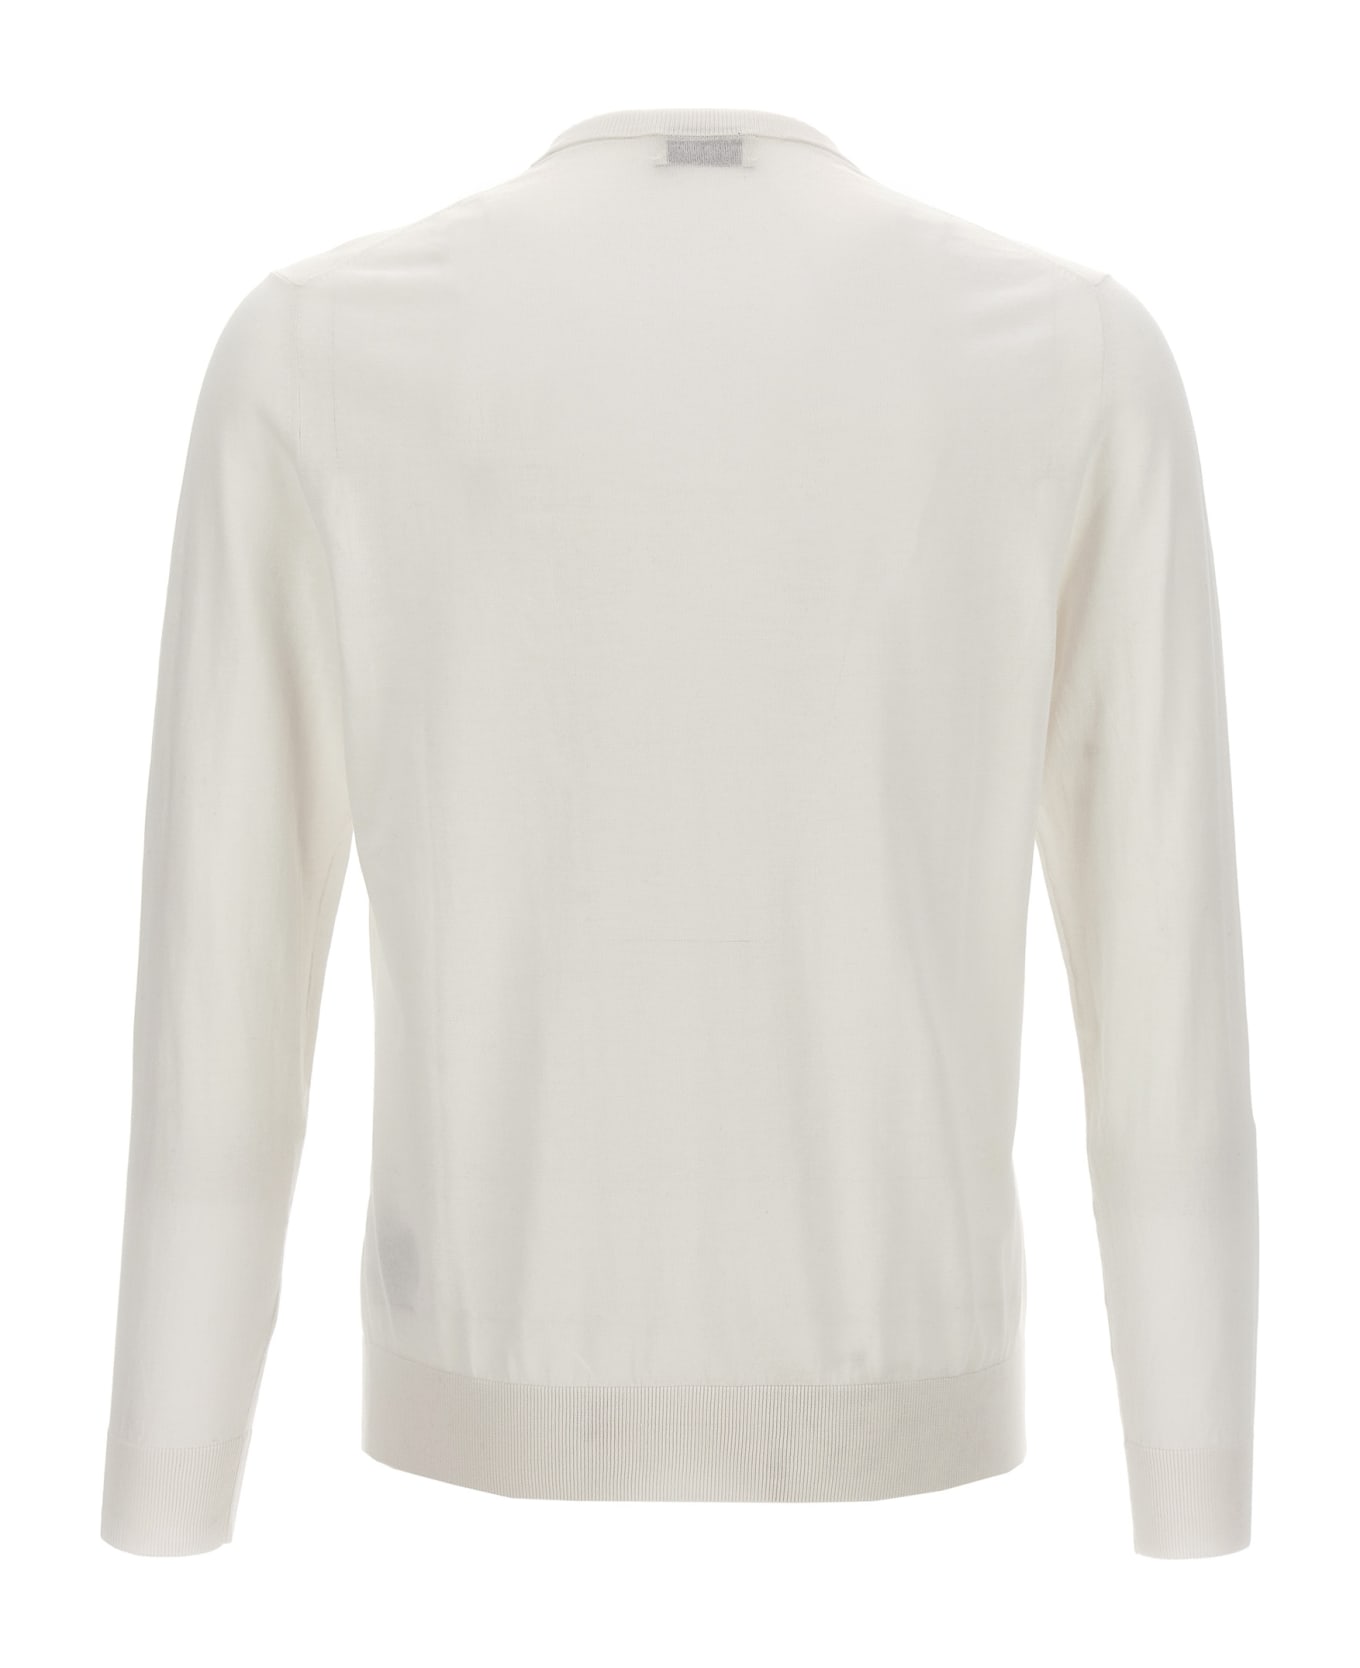 Ballantyne Cotton Sweater - White ニットウェア